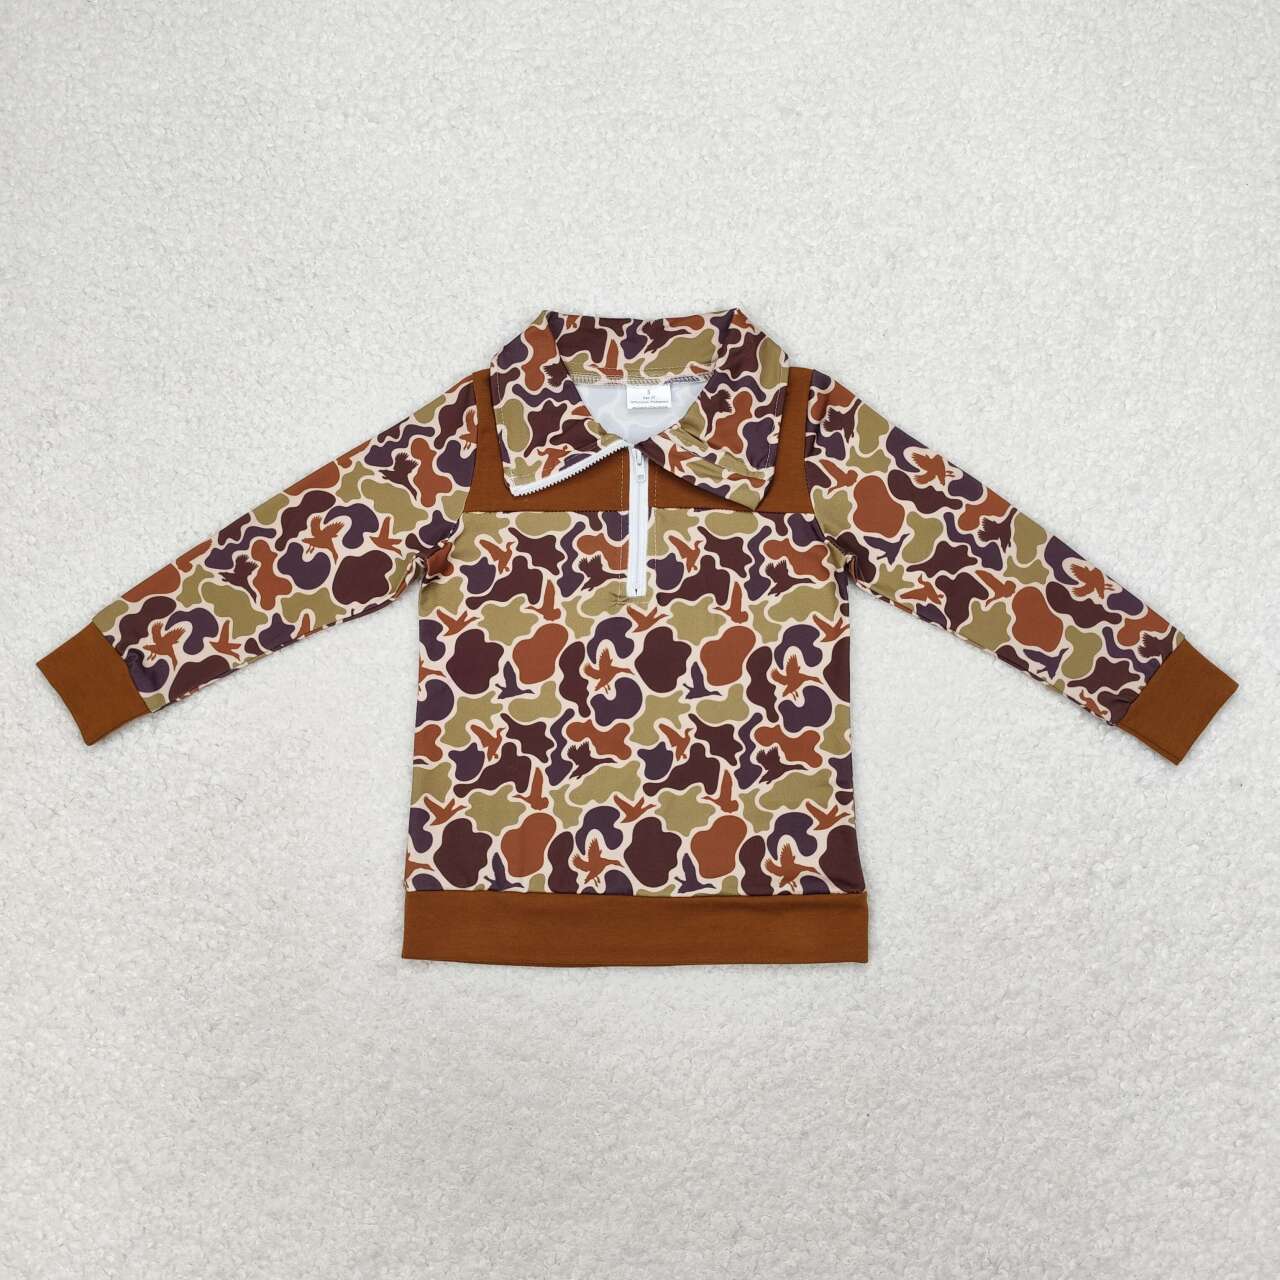 BT0712 Brown Camo Duck Print Boys Pullover Zipper Tee Shirts Top